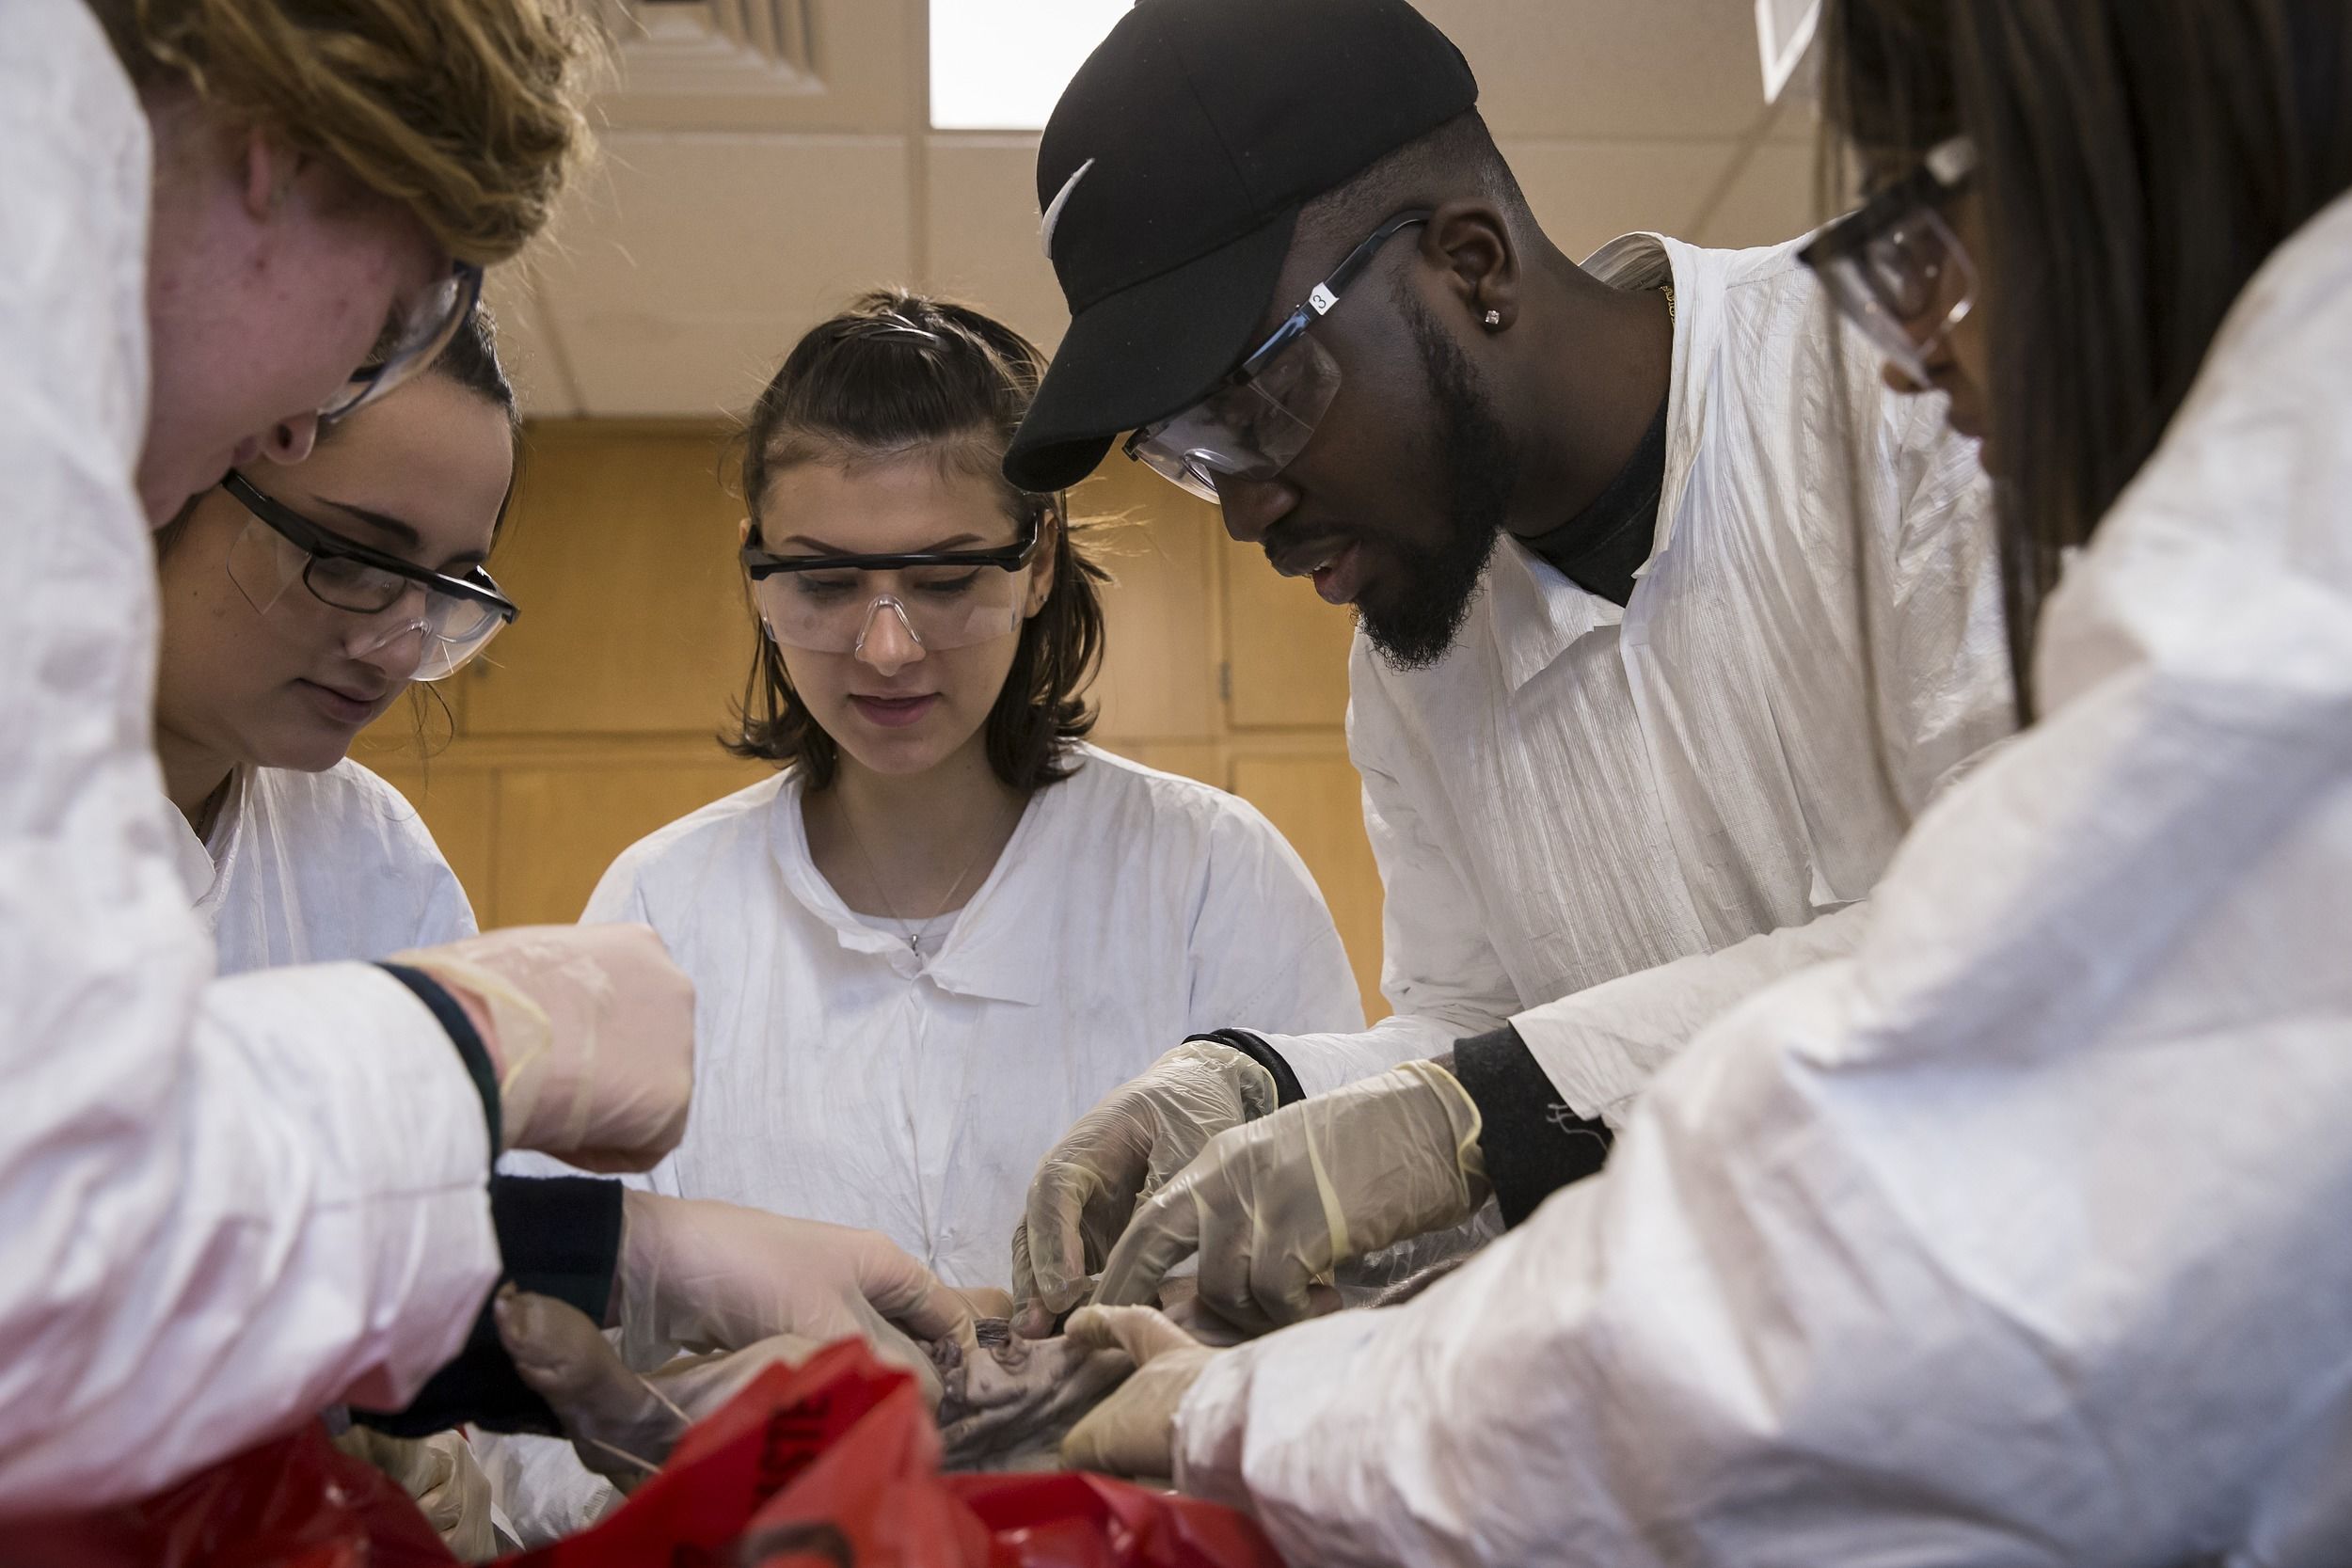 Anatomy students examining a cadaver.